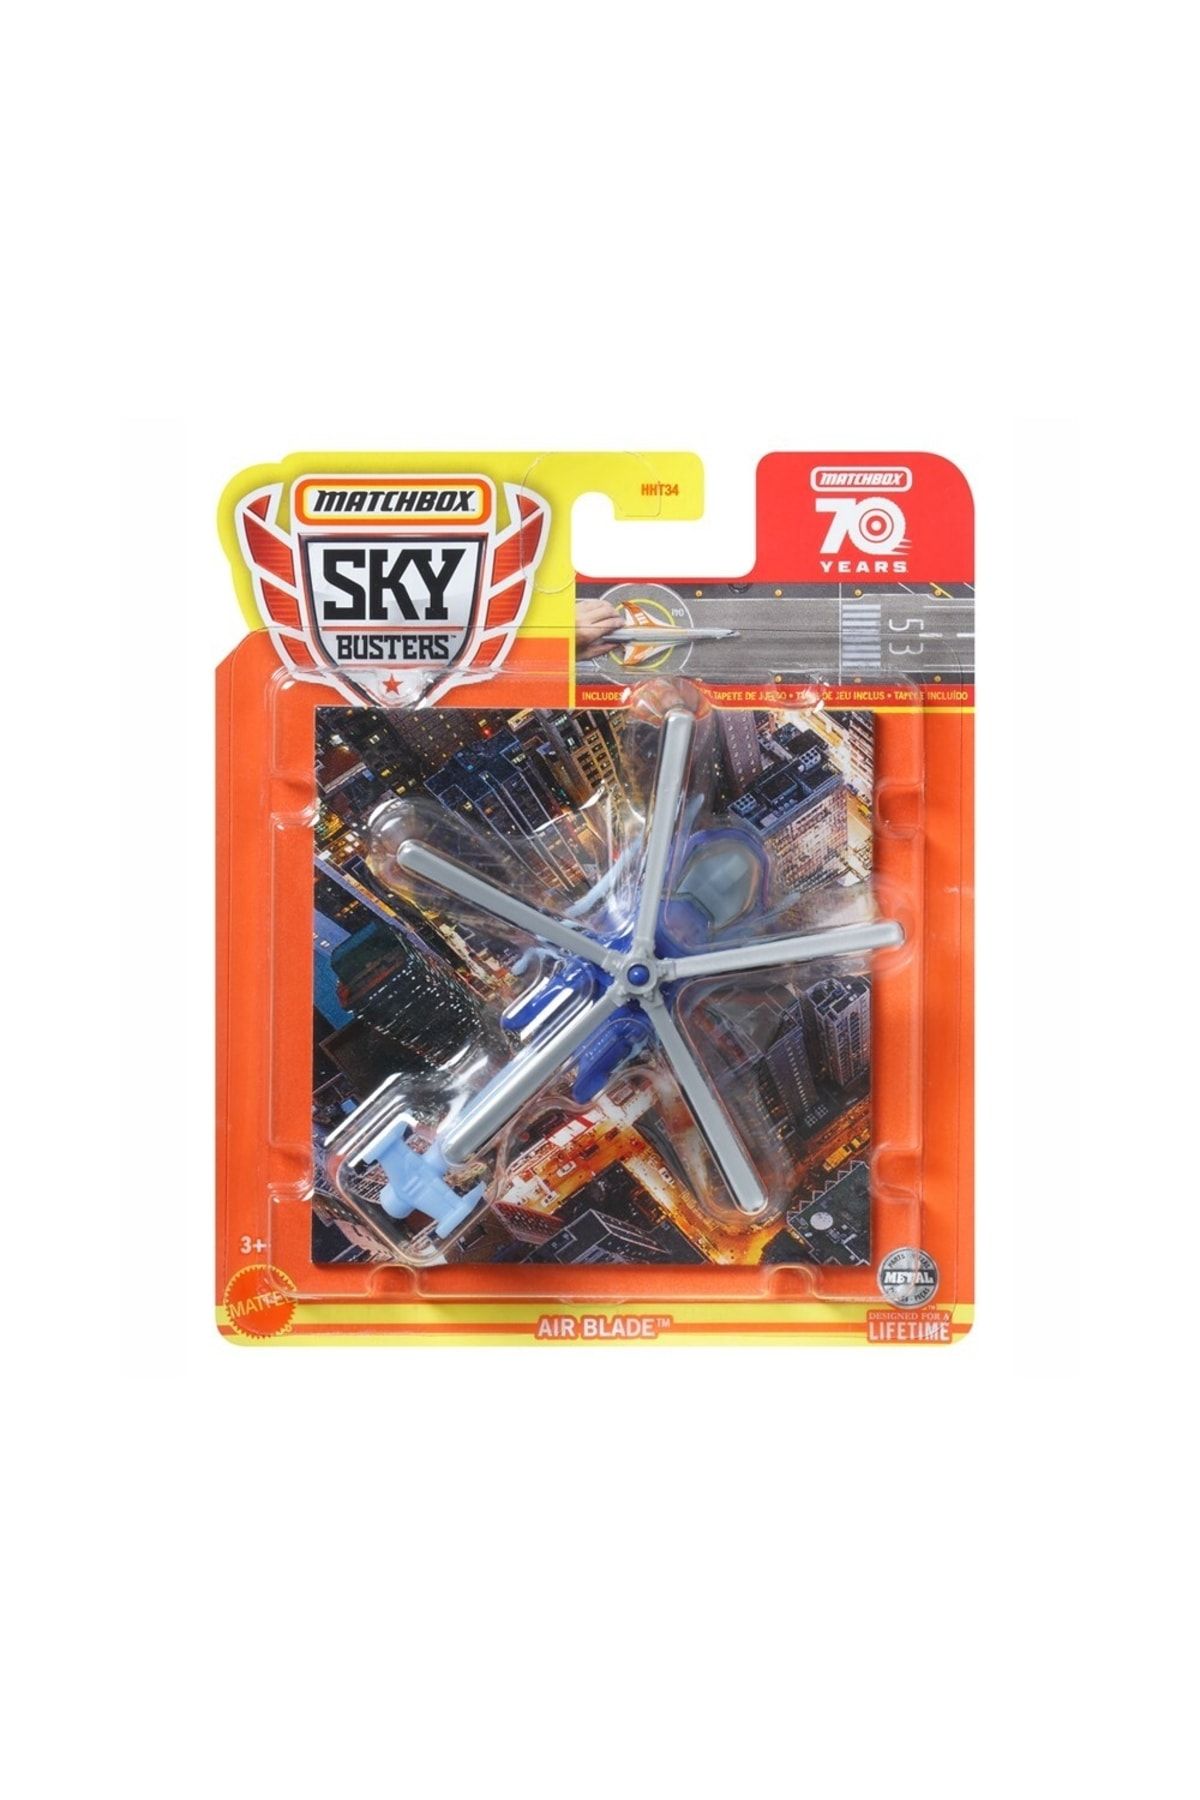 HOT WHEELS Mattel Matchbox - Sky Busters, Air Blade  5/32 Hlj02